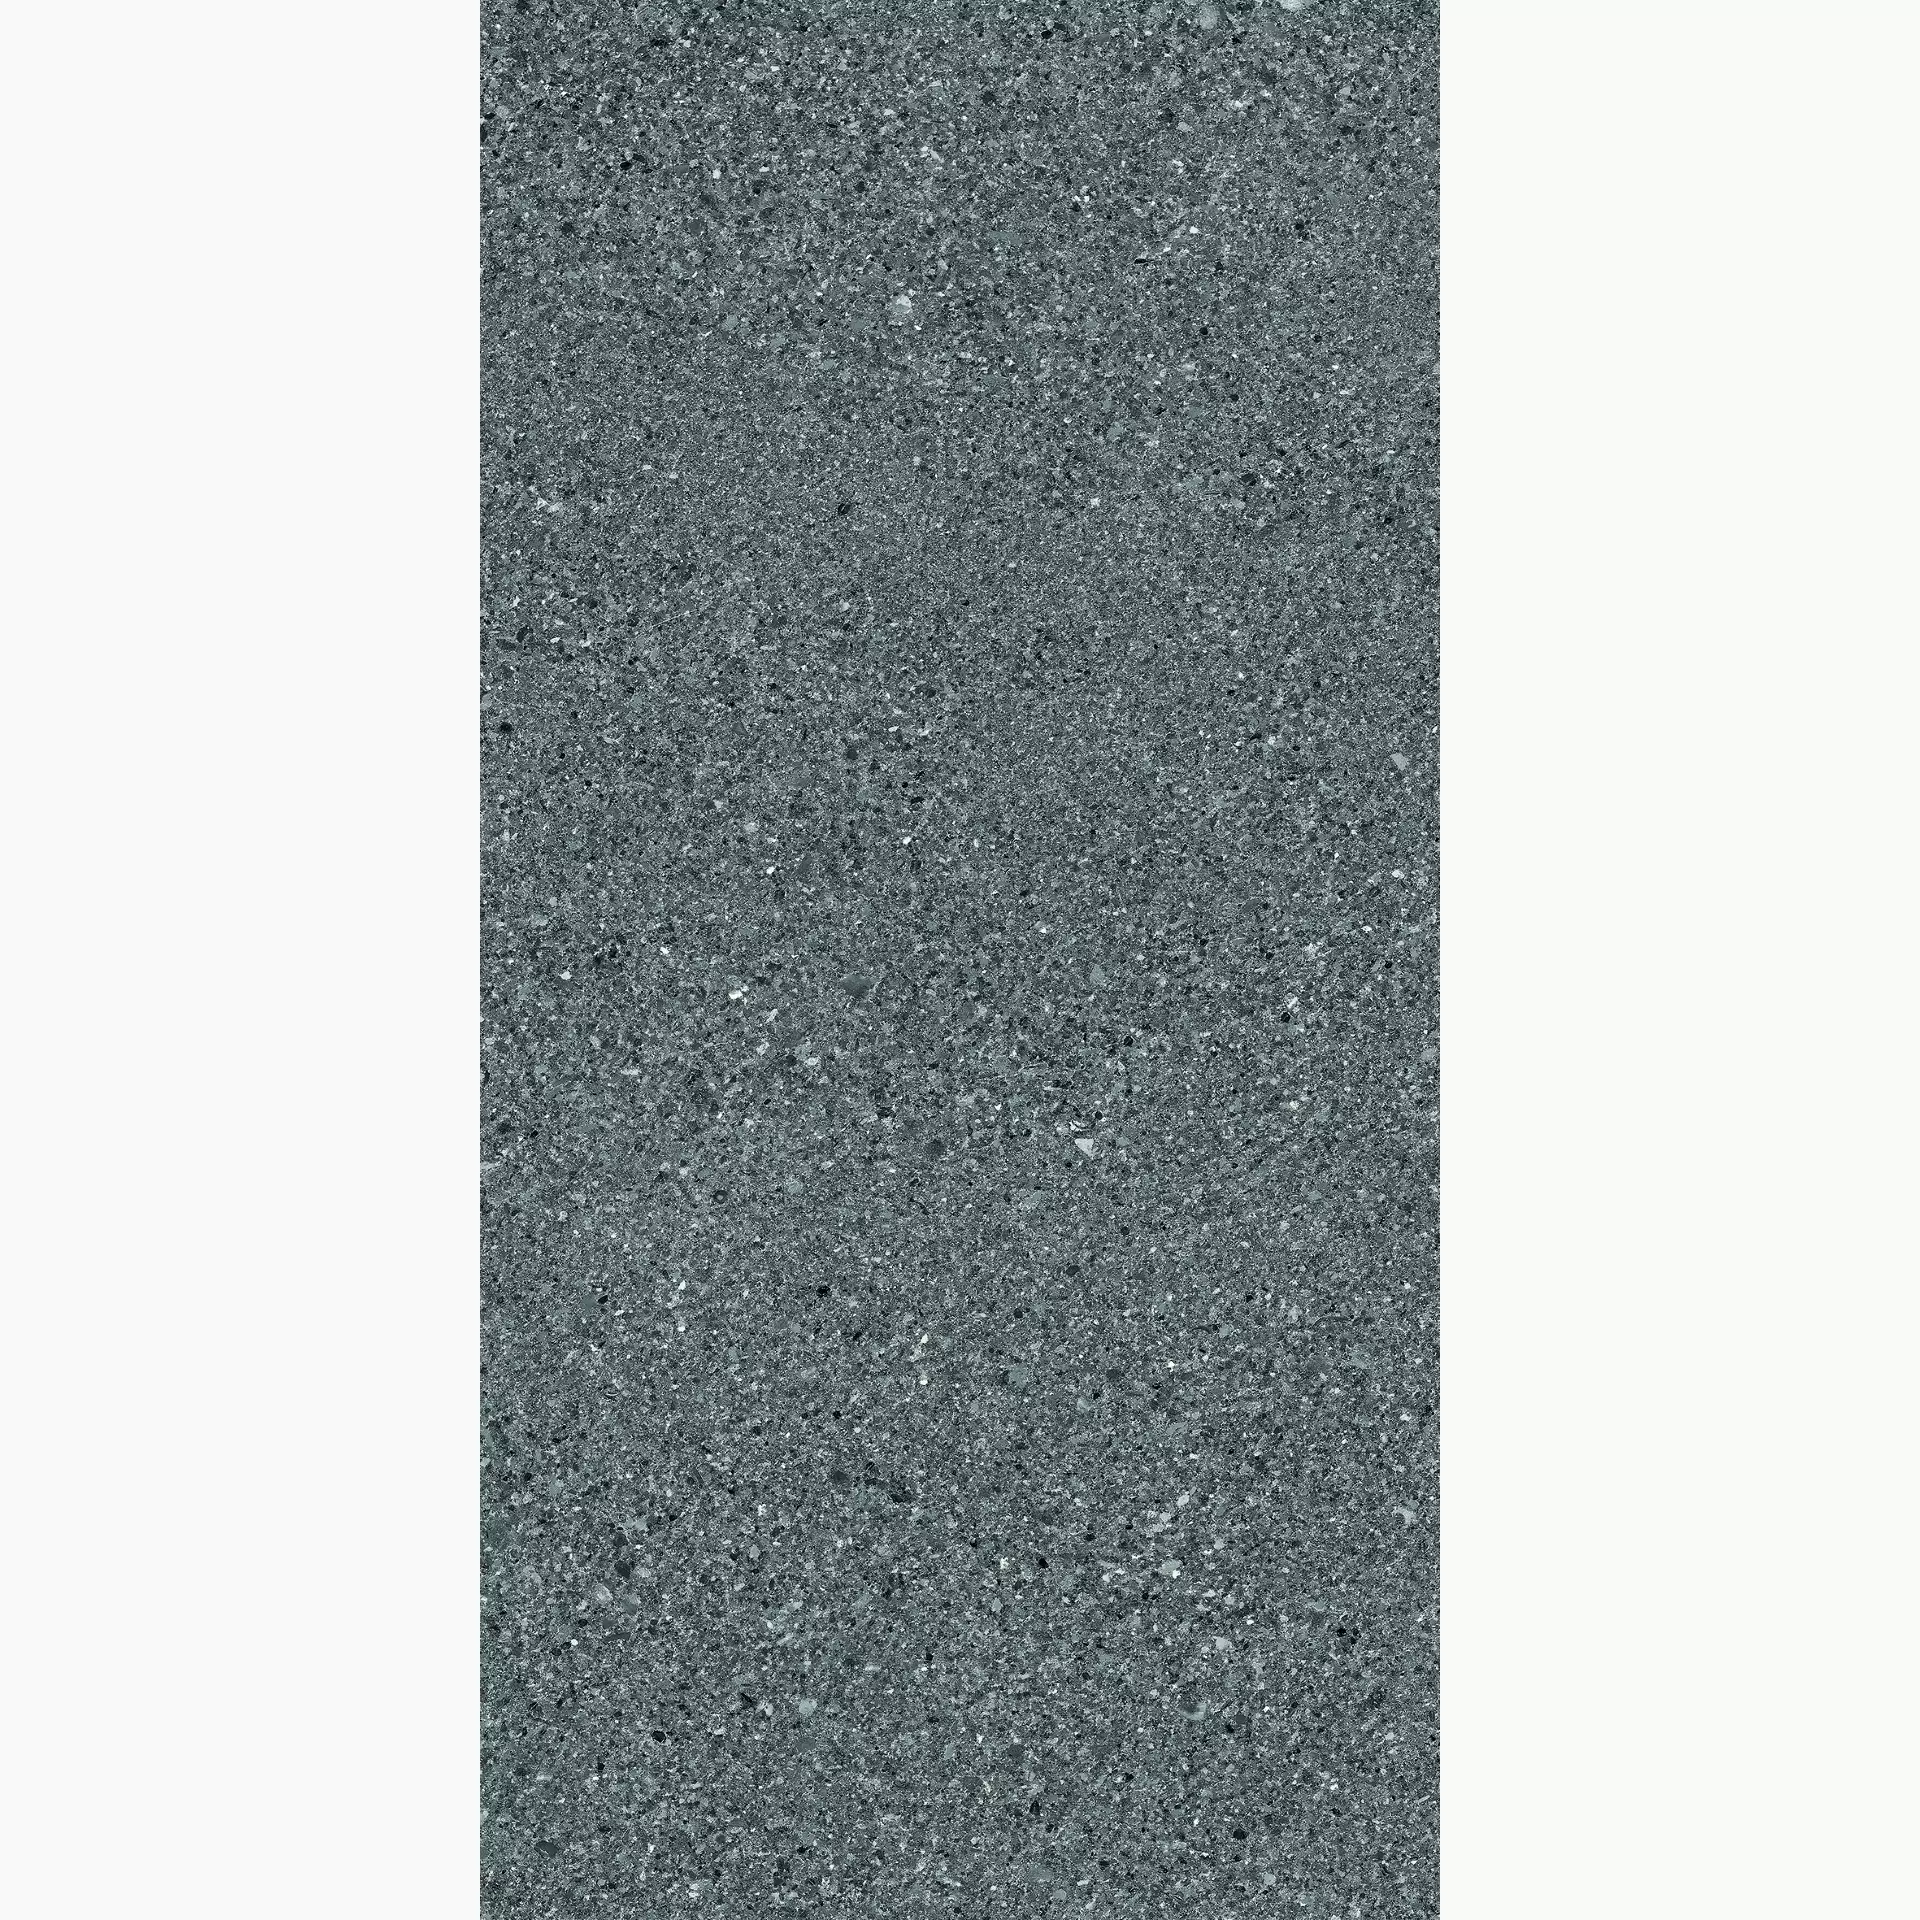 Ergon Grain Stone Fine Grain Dark Naturale E09W 30x60cm rectified 9,5mm